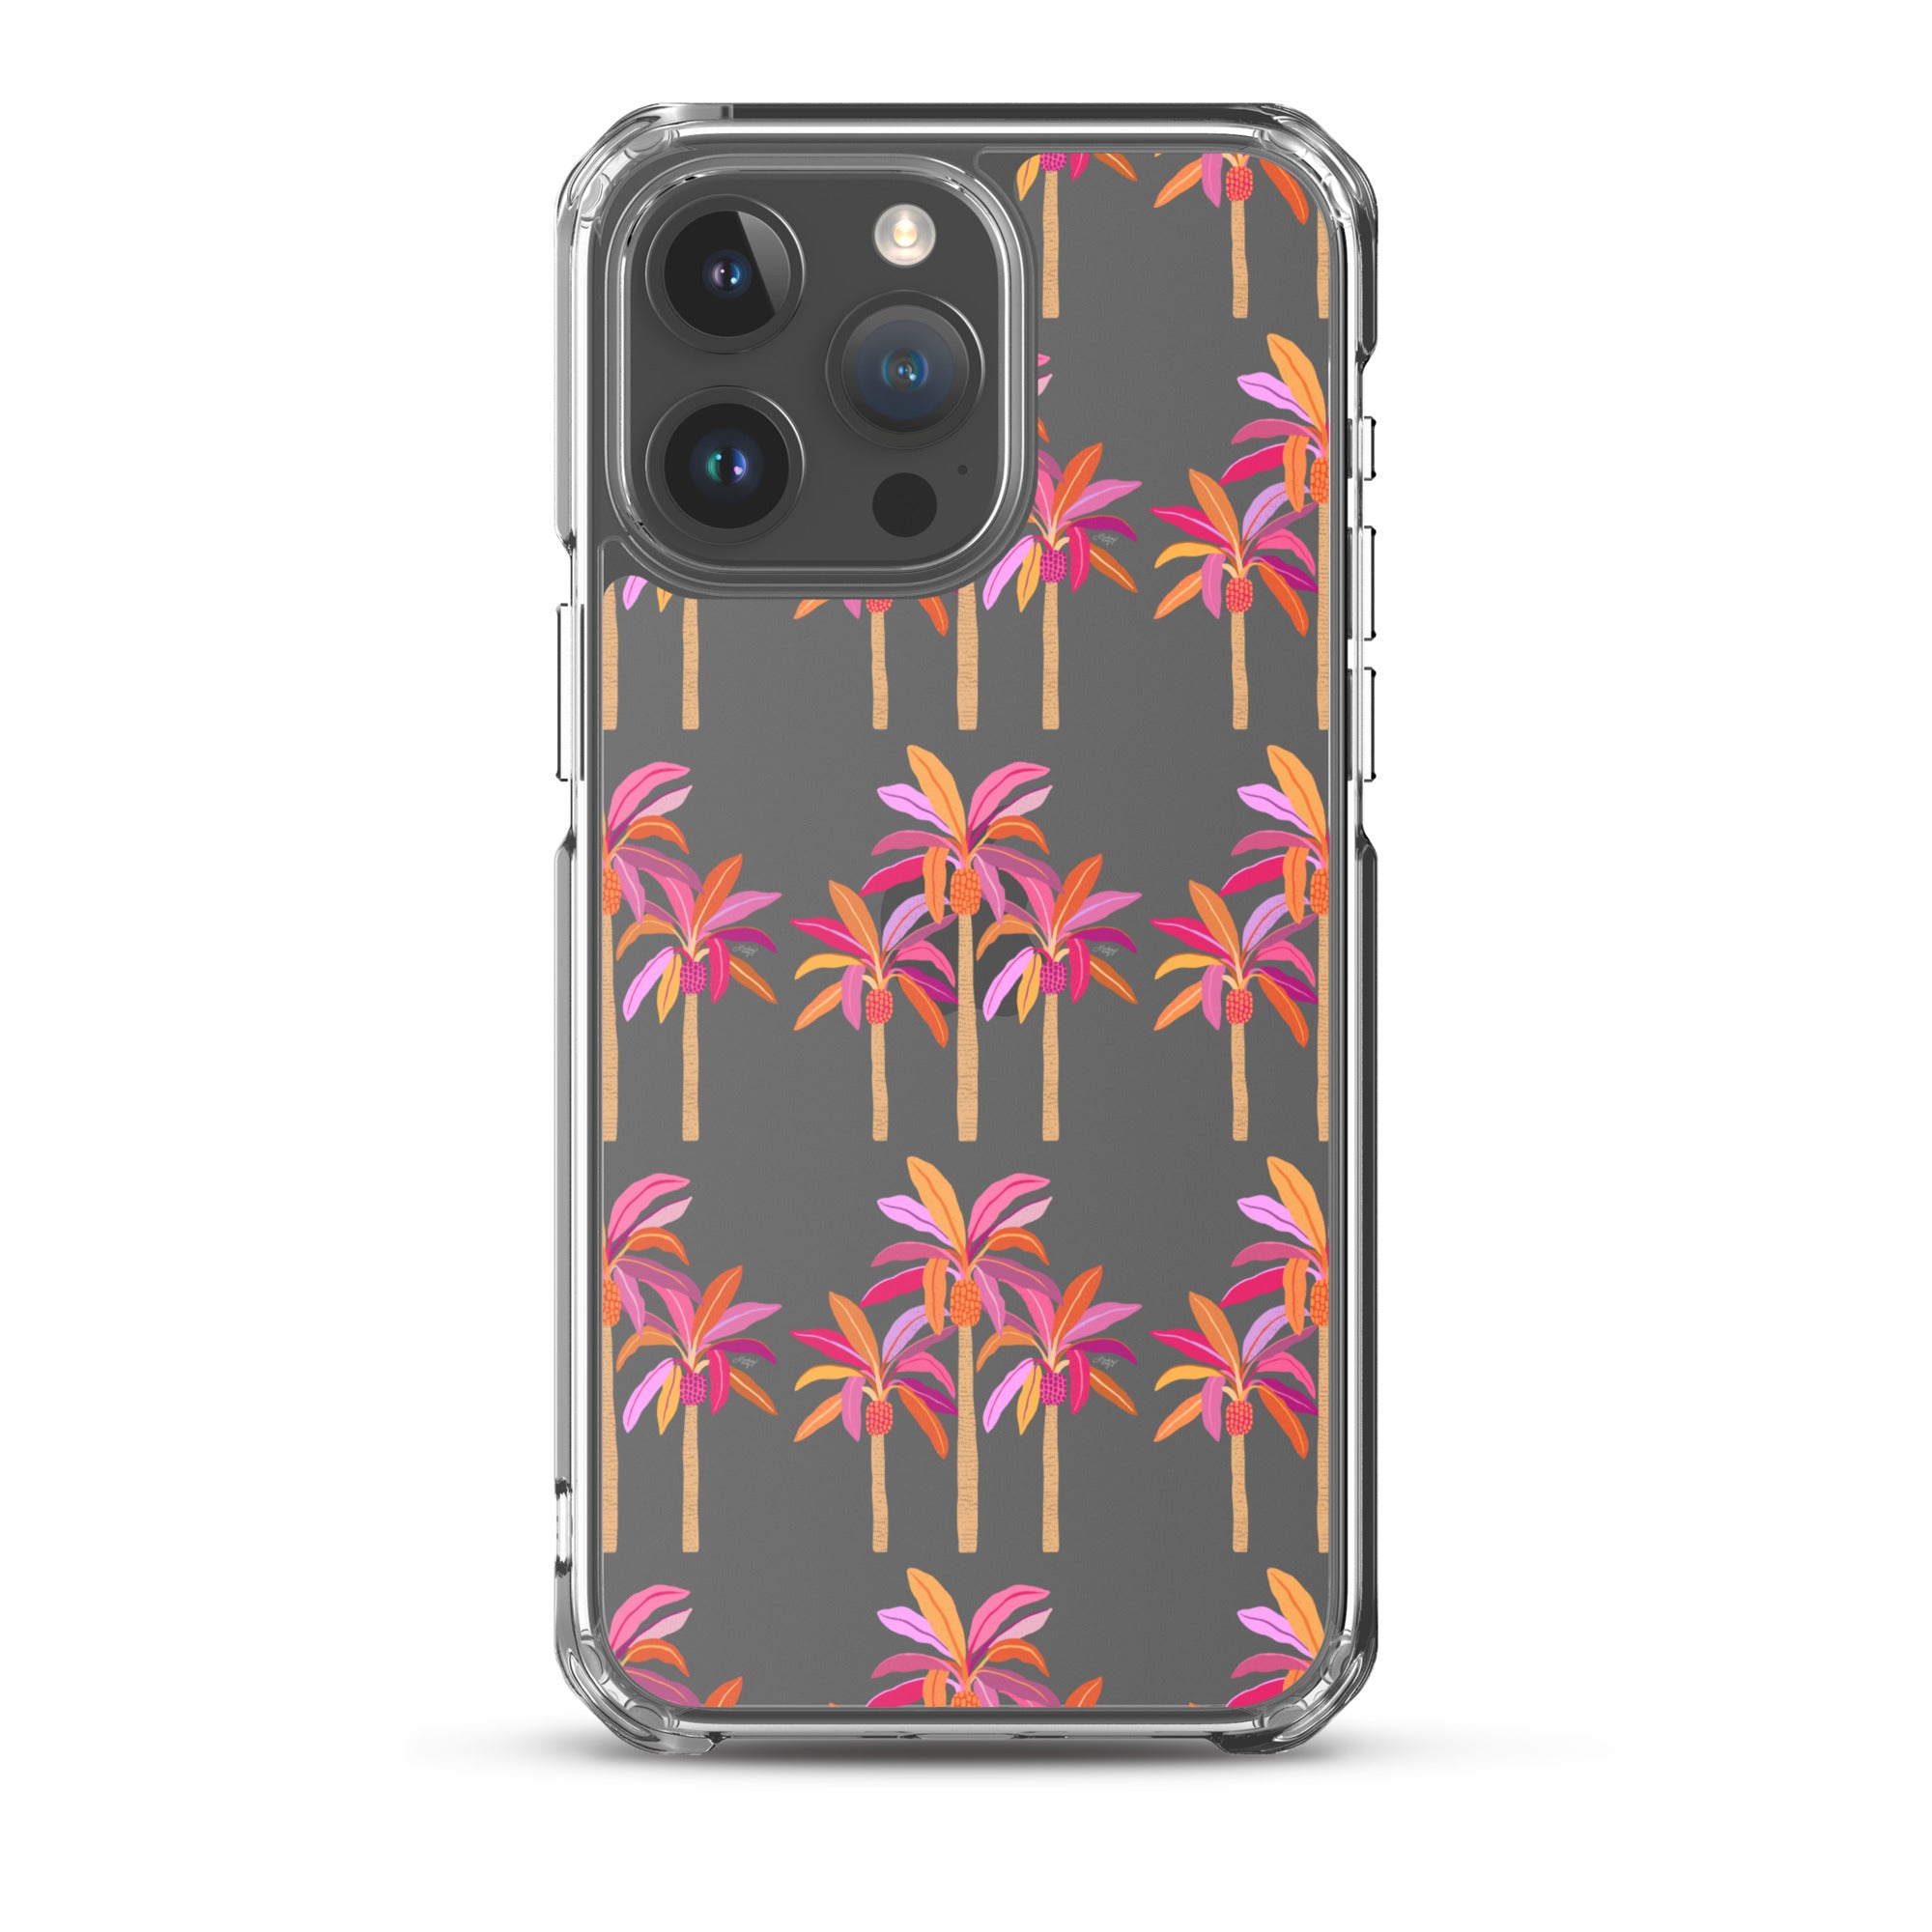 Ilustración de palmeras (paleta cálida) - Funda transparente para iPhone®